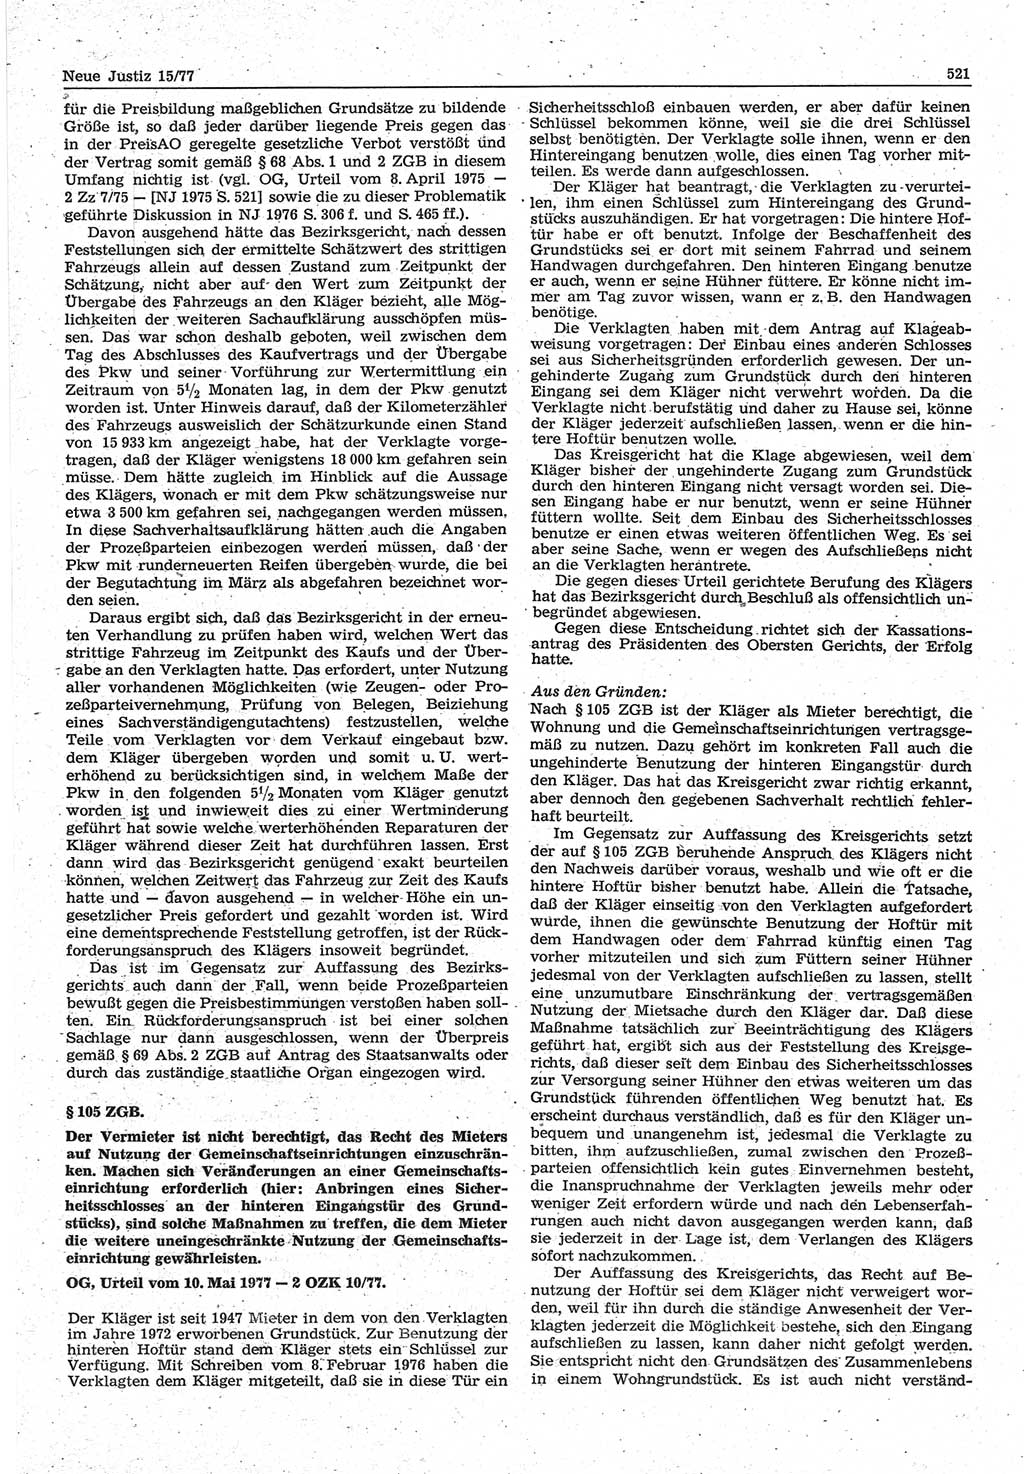 Neue Justiz (NJ), Zeitschrift für Recht und Rechtswissenschaft-Zeitschrift, sozialistisches Recht und Gesetzlichkeit, 31. Jahrgang 1977, Seite 521 (NJ DDR 1977, S. 521)